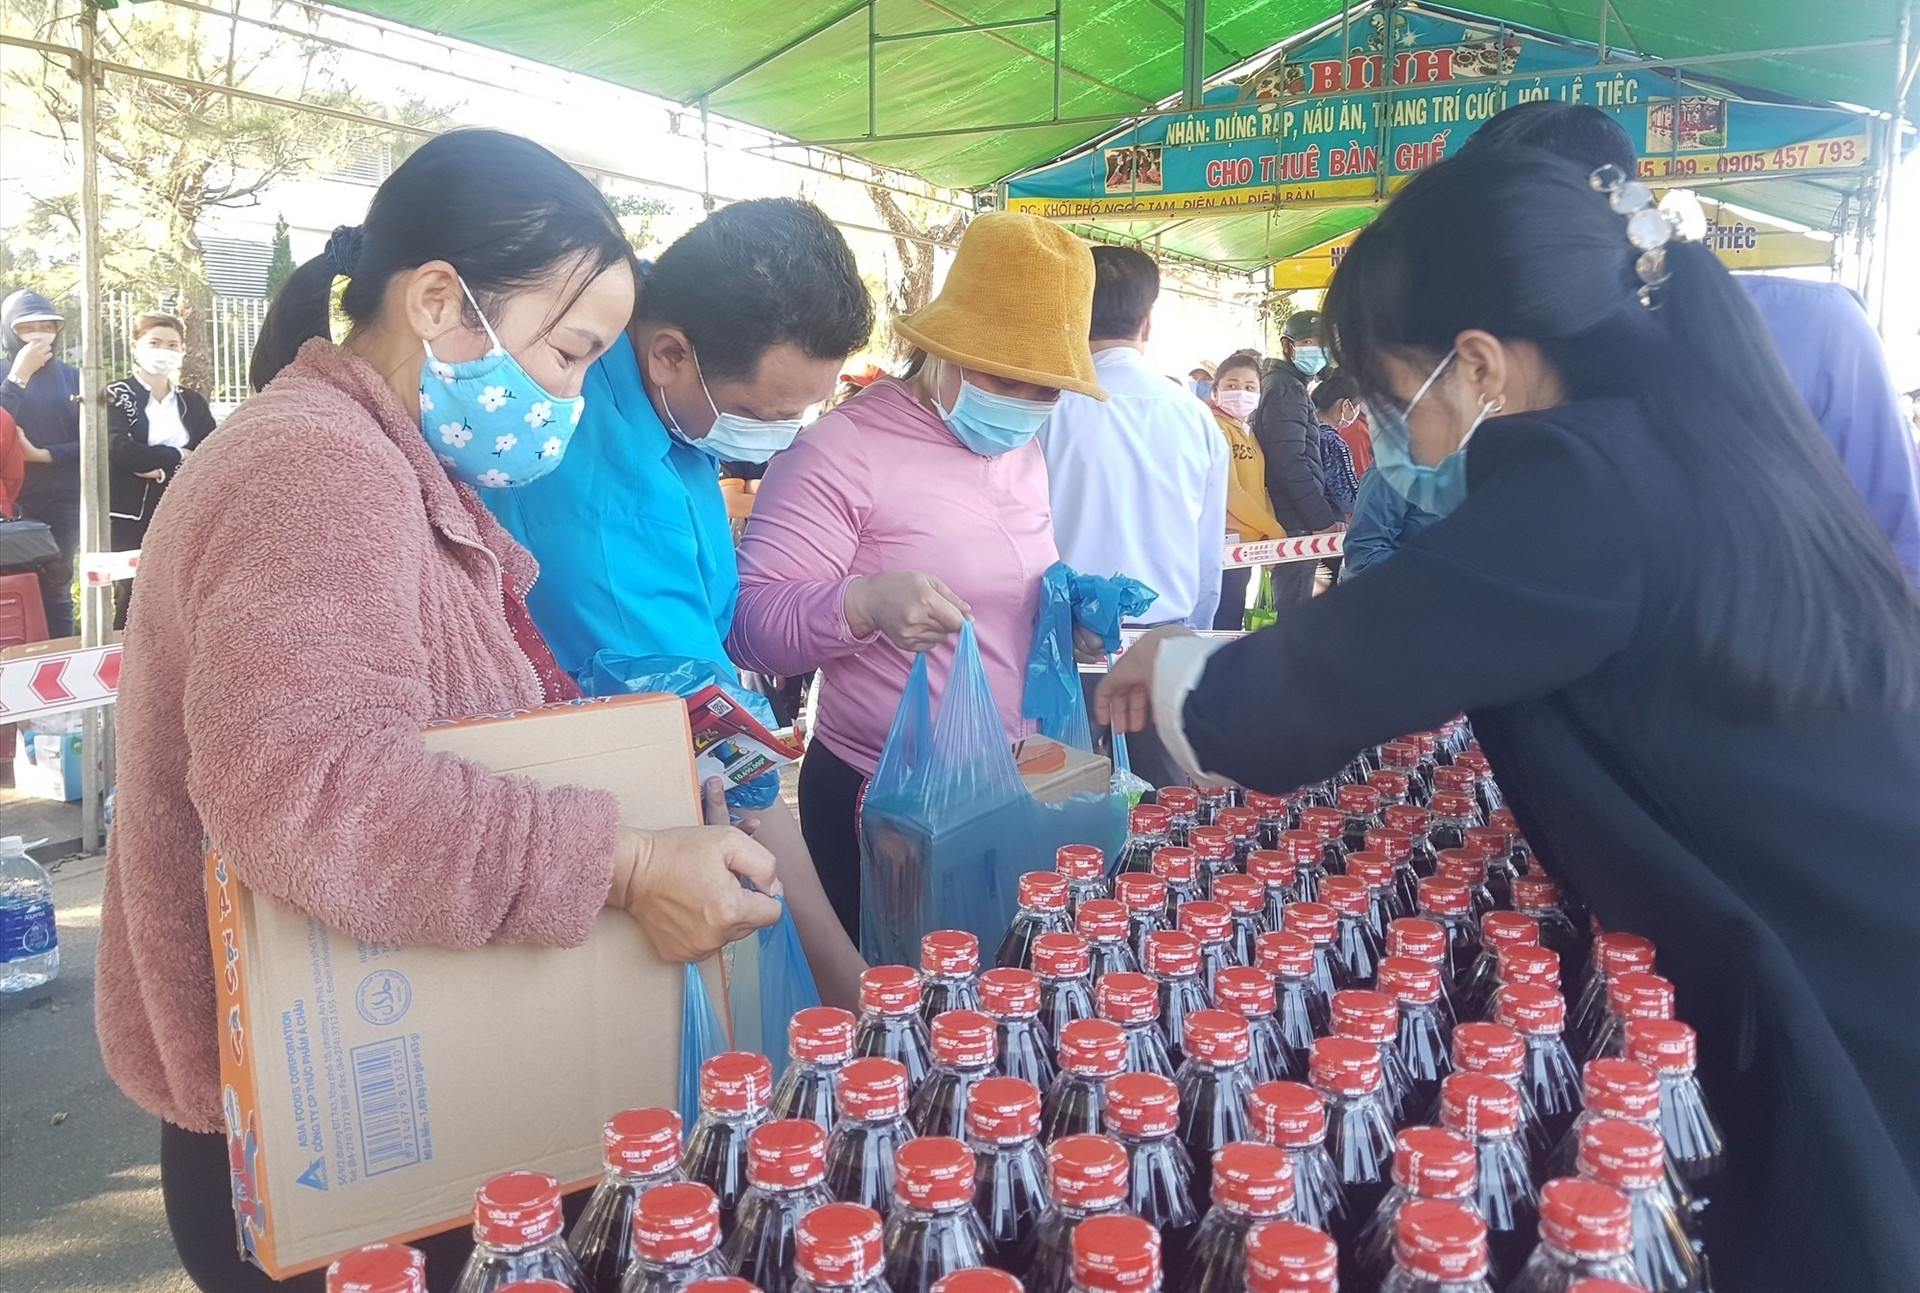 Gian hàng giá 0 đồng trong chương trình Tết sẻ chia giúp công nhân lao động khó khăn vừa được tổ chức tại KCN Điện Nam - Điện Ngọc. Ảnh: D.L